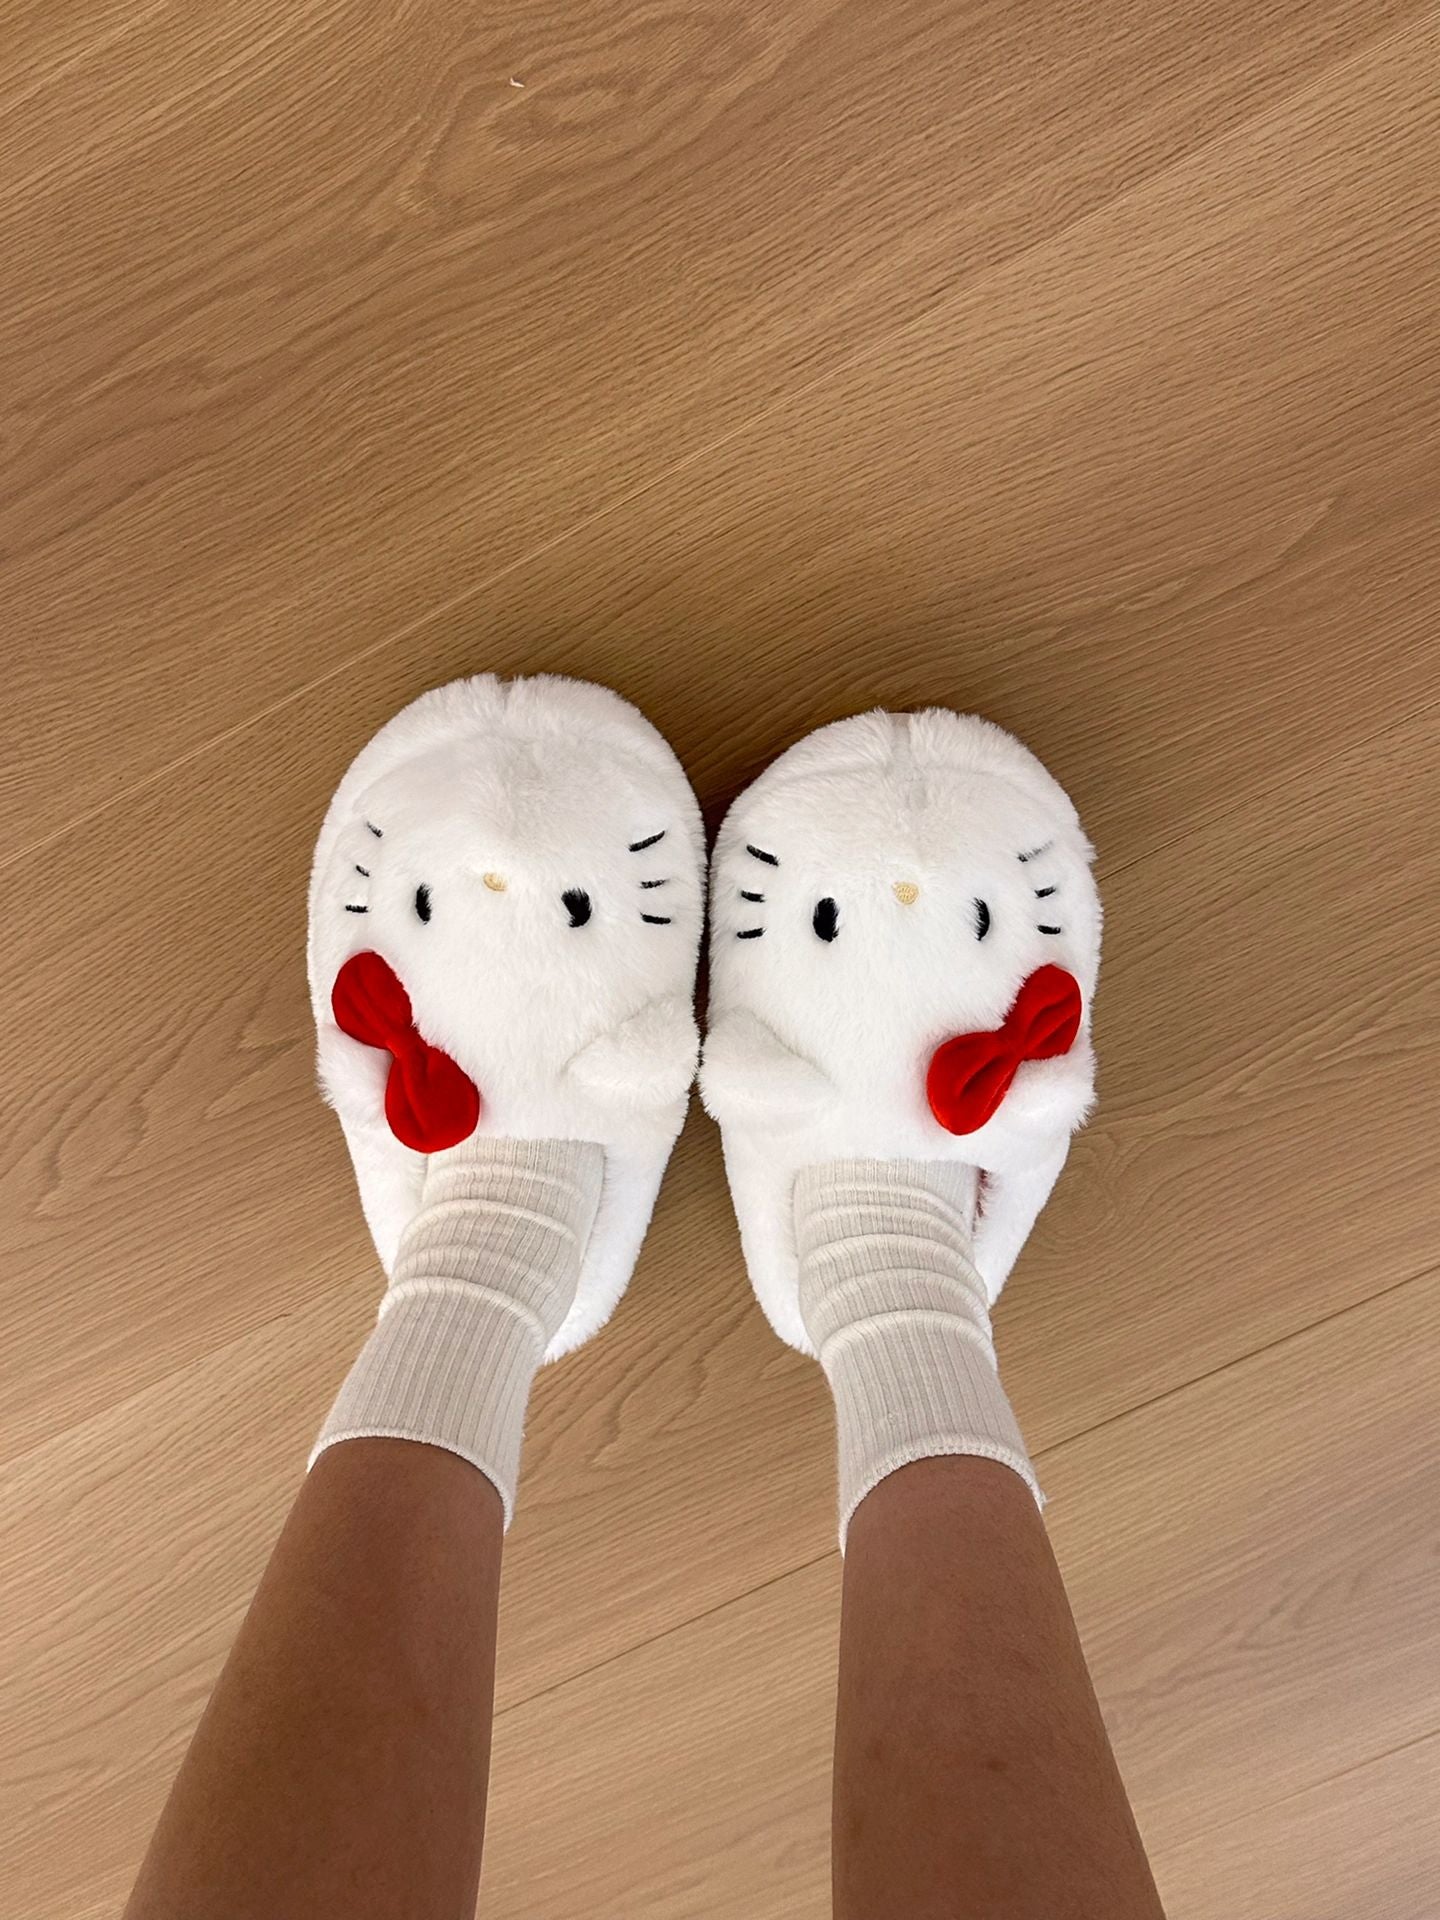 Hellokitty Fuzzy Slippers Women Kawaii Slippers for Women House Slippers Cute Slippers